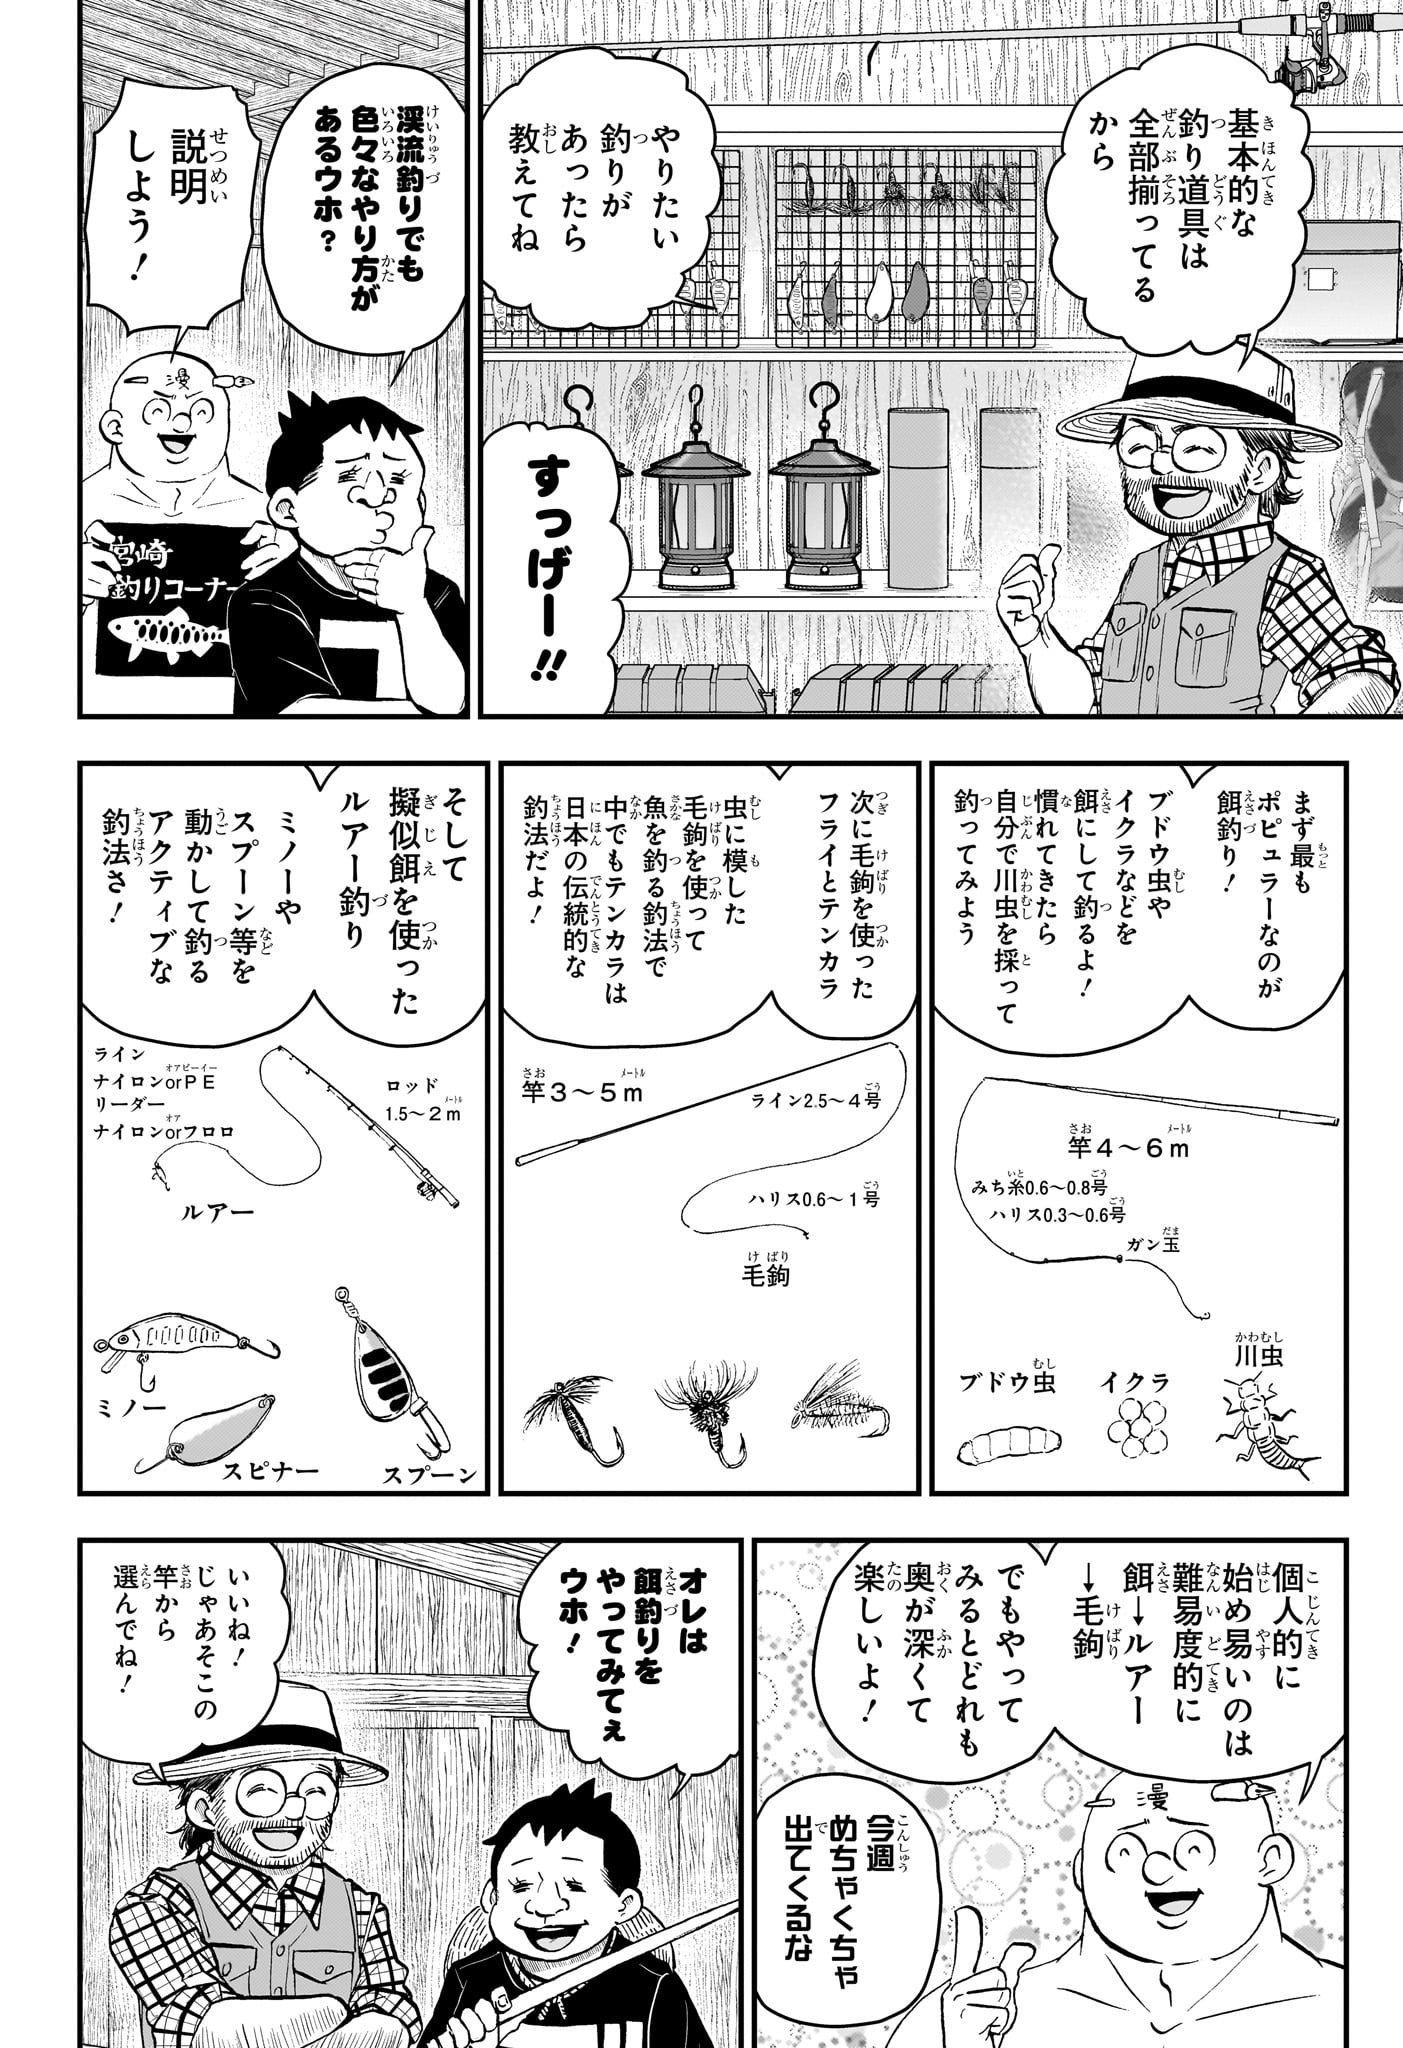 Boku to Roboko - Chapter 187 - Page 4